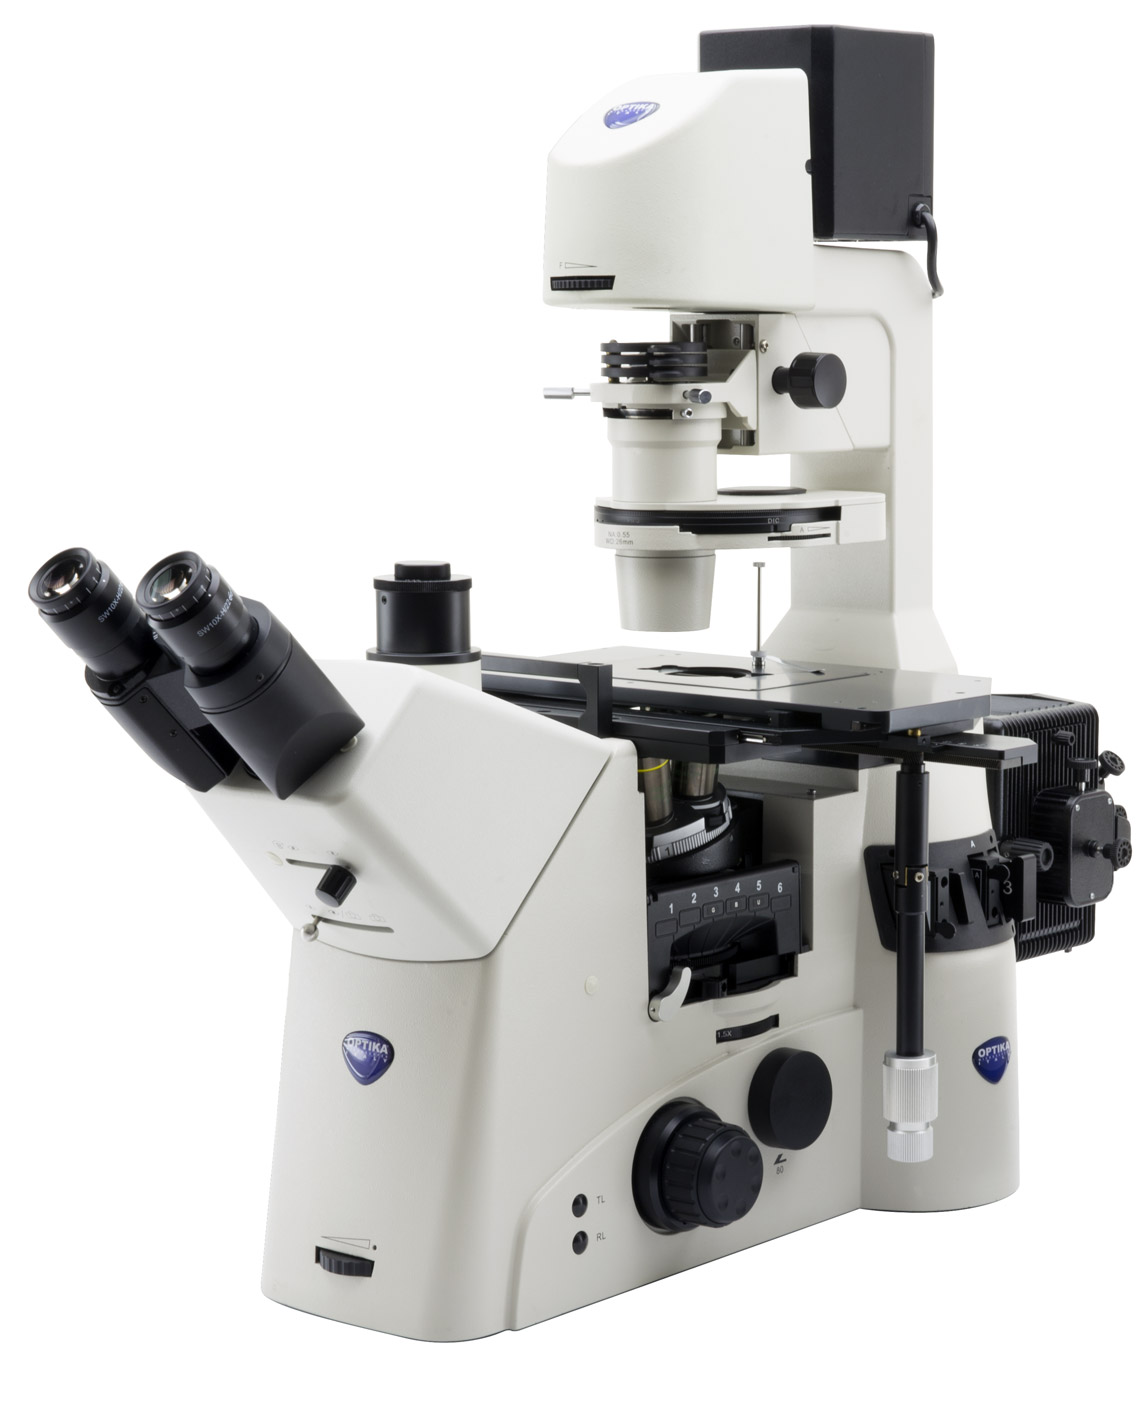 กล้องจุลทรรศน์แบบหัวกลับสำหรับงานวัสดุและโลหะวิทยา (Metallurgical Inverted Microscope) ยี่ห้อ OPTIKA รุ่น IM-7